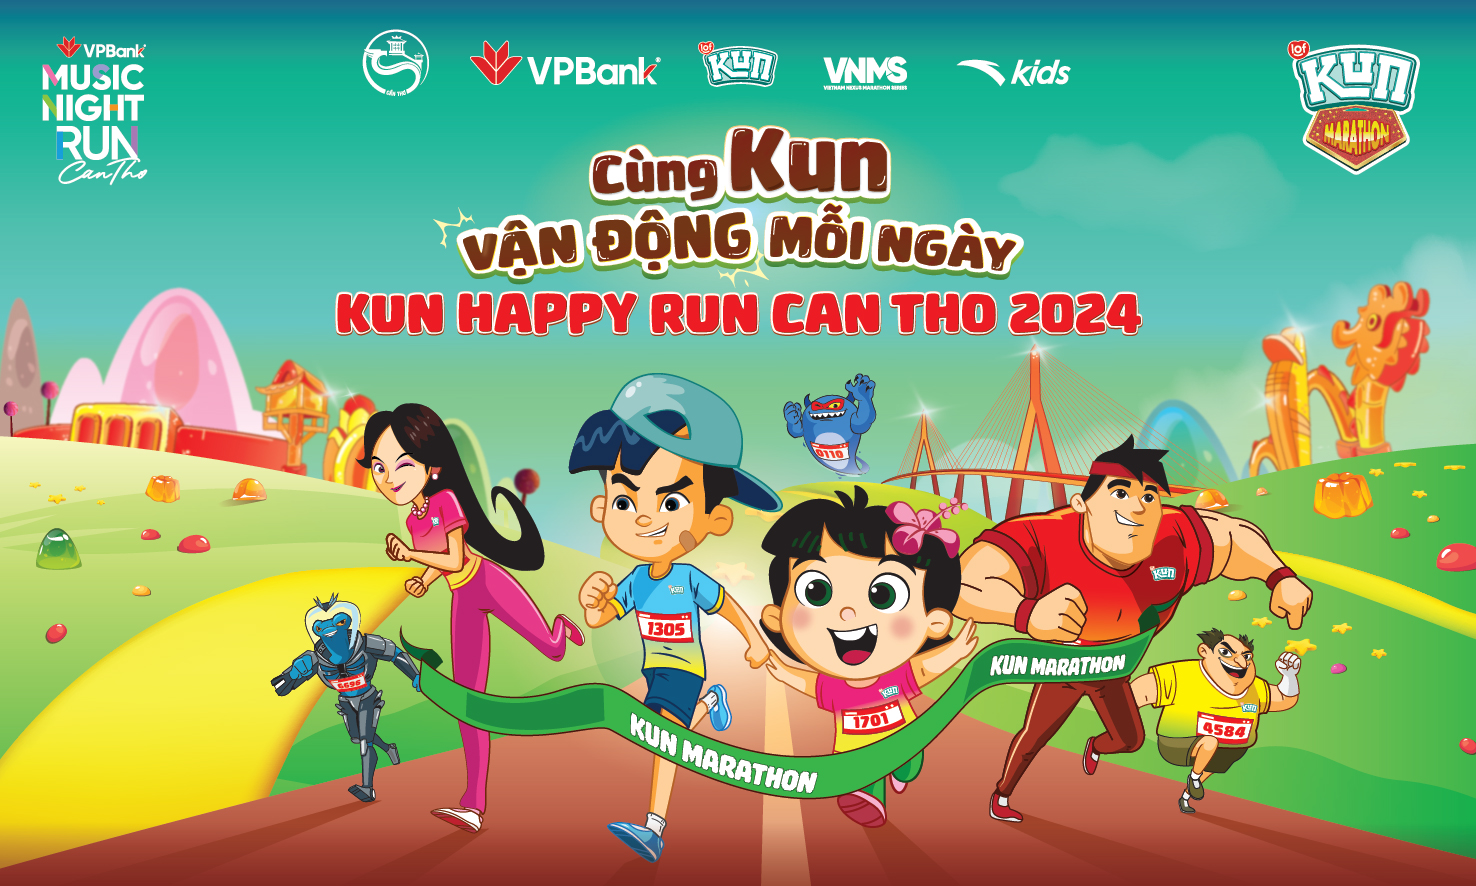 KUN Happy Run Cần Thơ 2024 - Sân chơi thể thao đỉnh cao, căng trào cảm xúc - Ảnh 1.